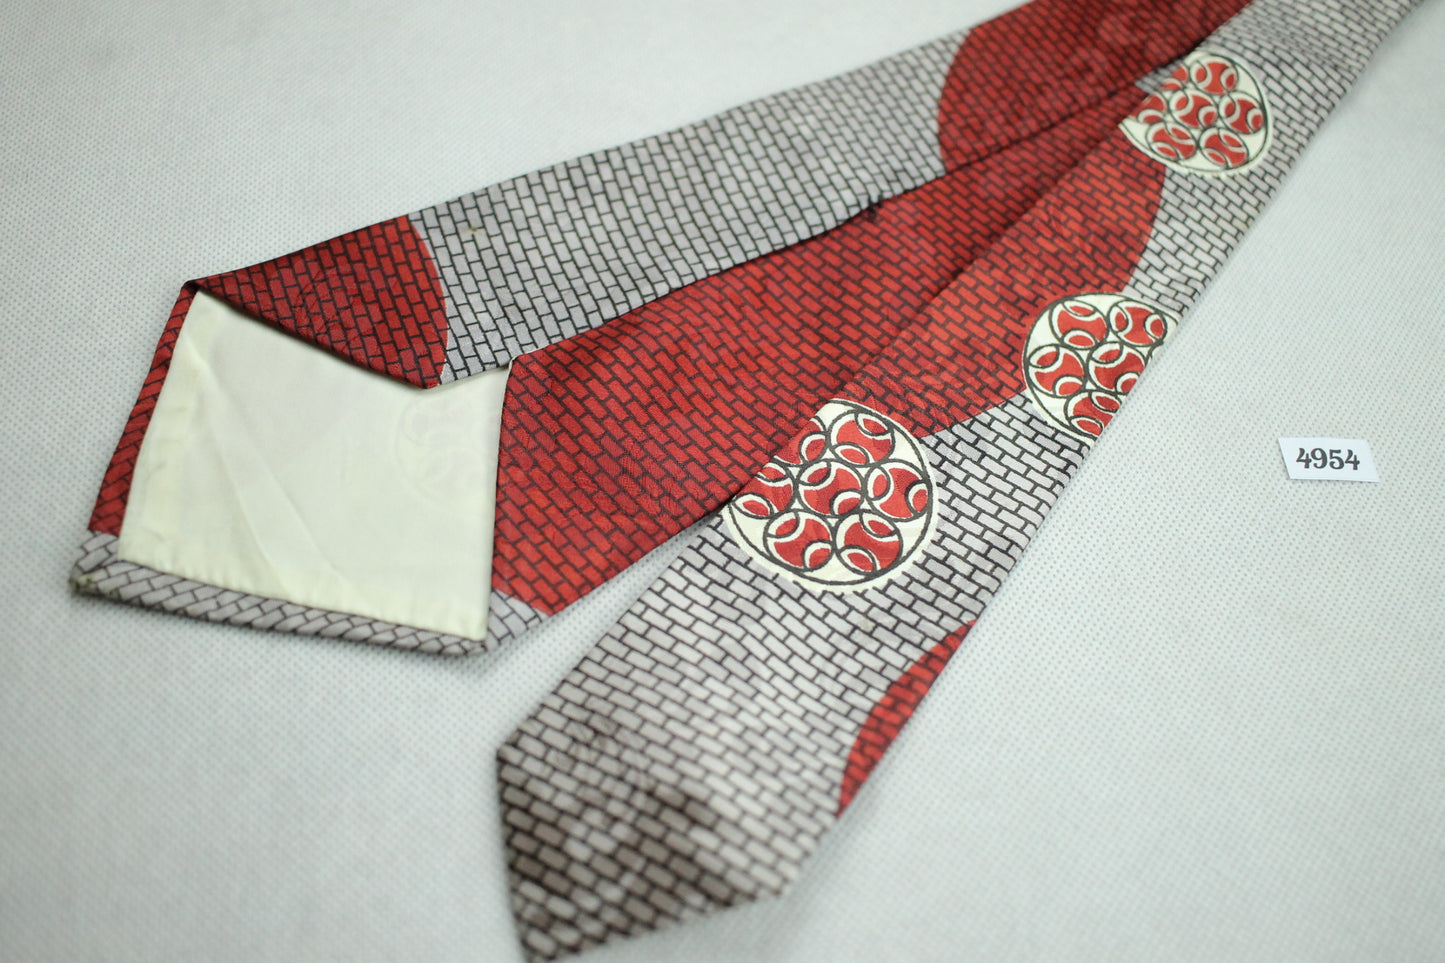 Vintage Helmsley King Swing Tie 1940s/50s Jacquard Red Grey